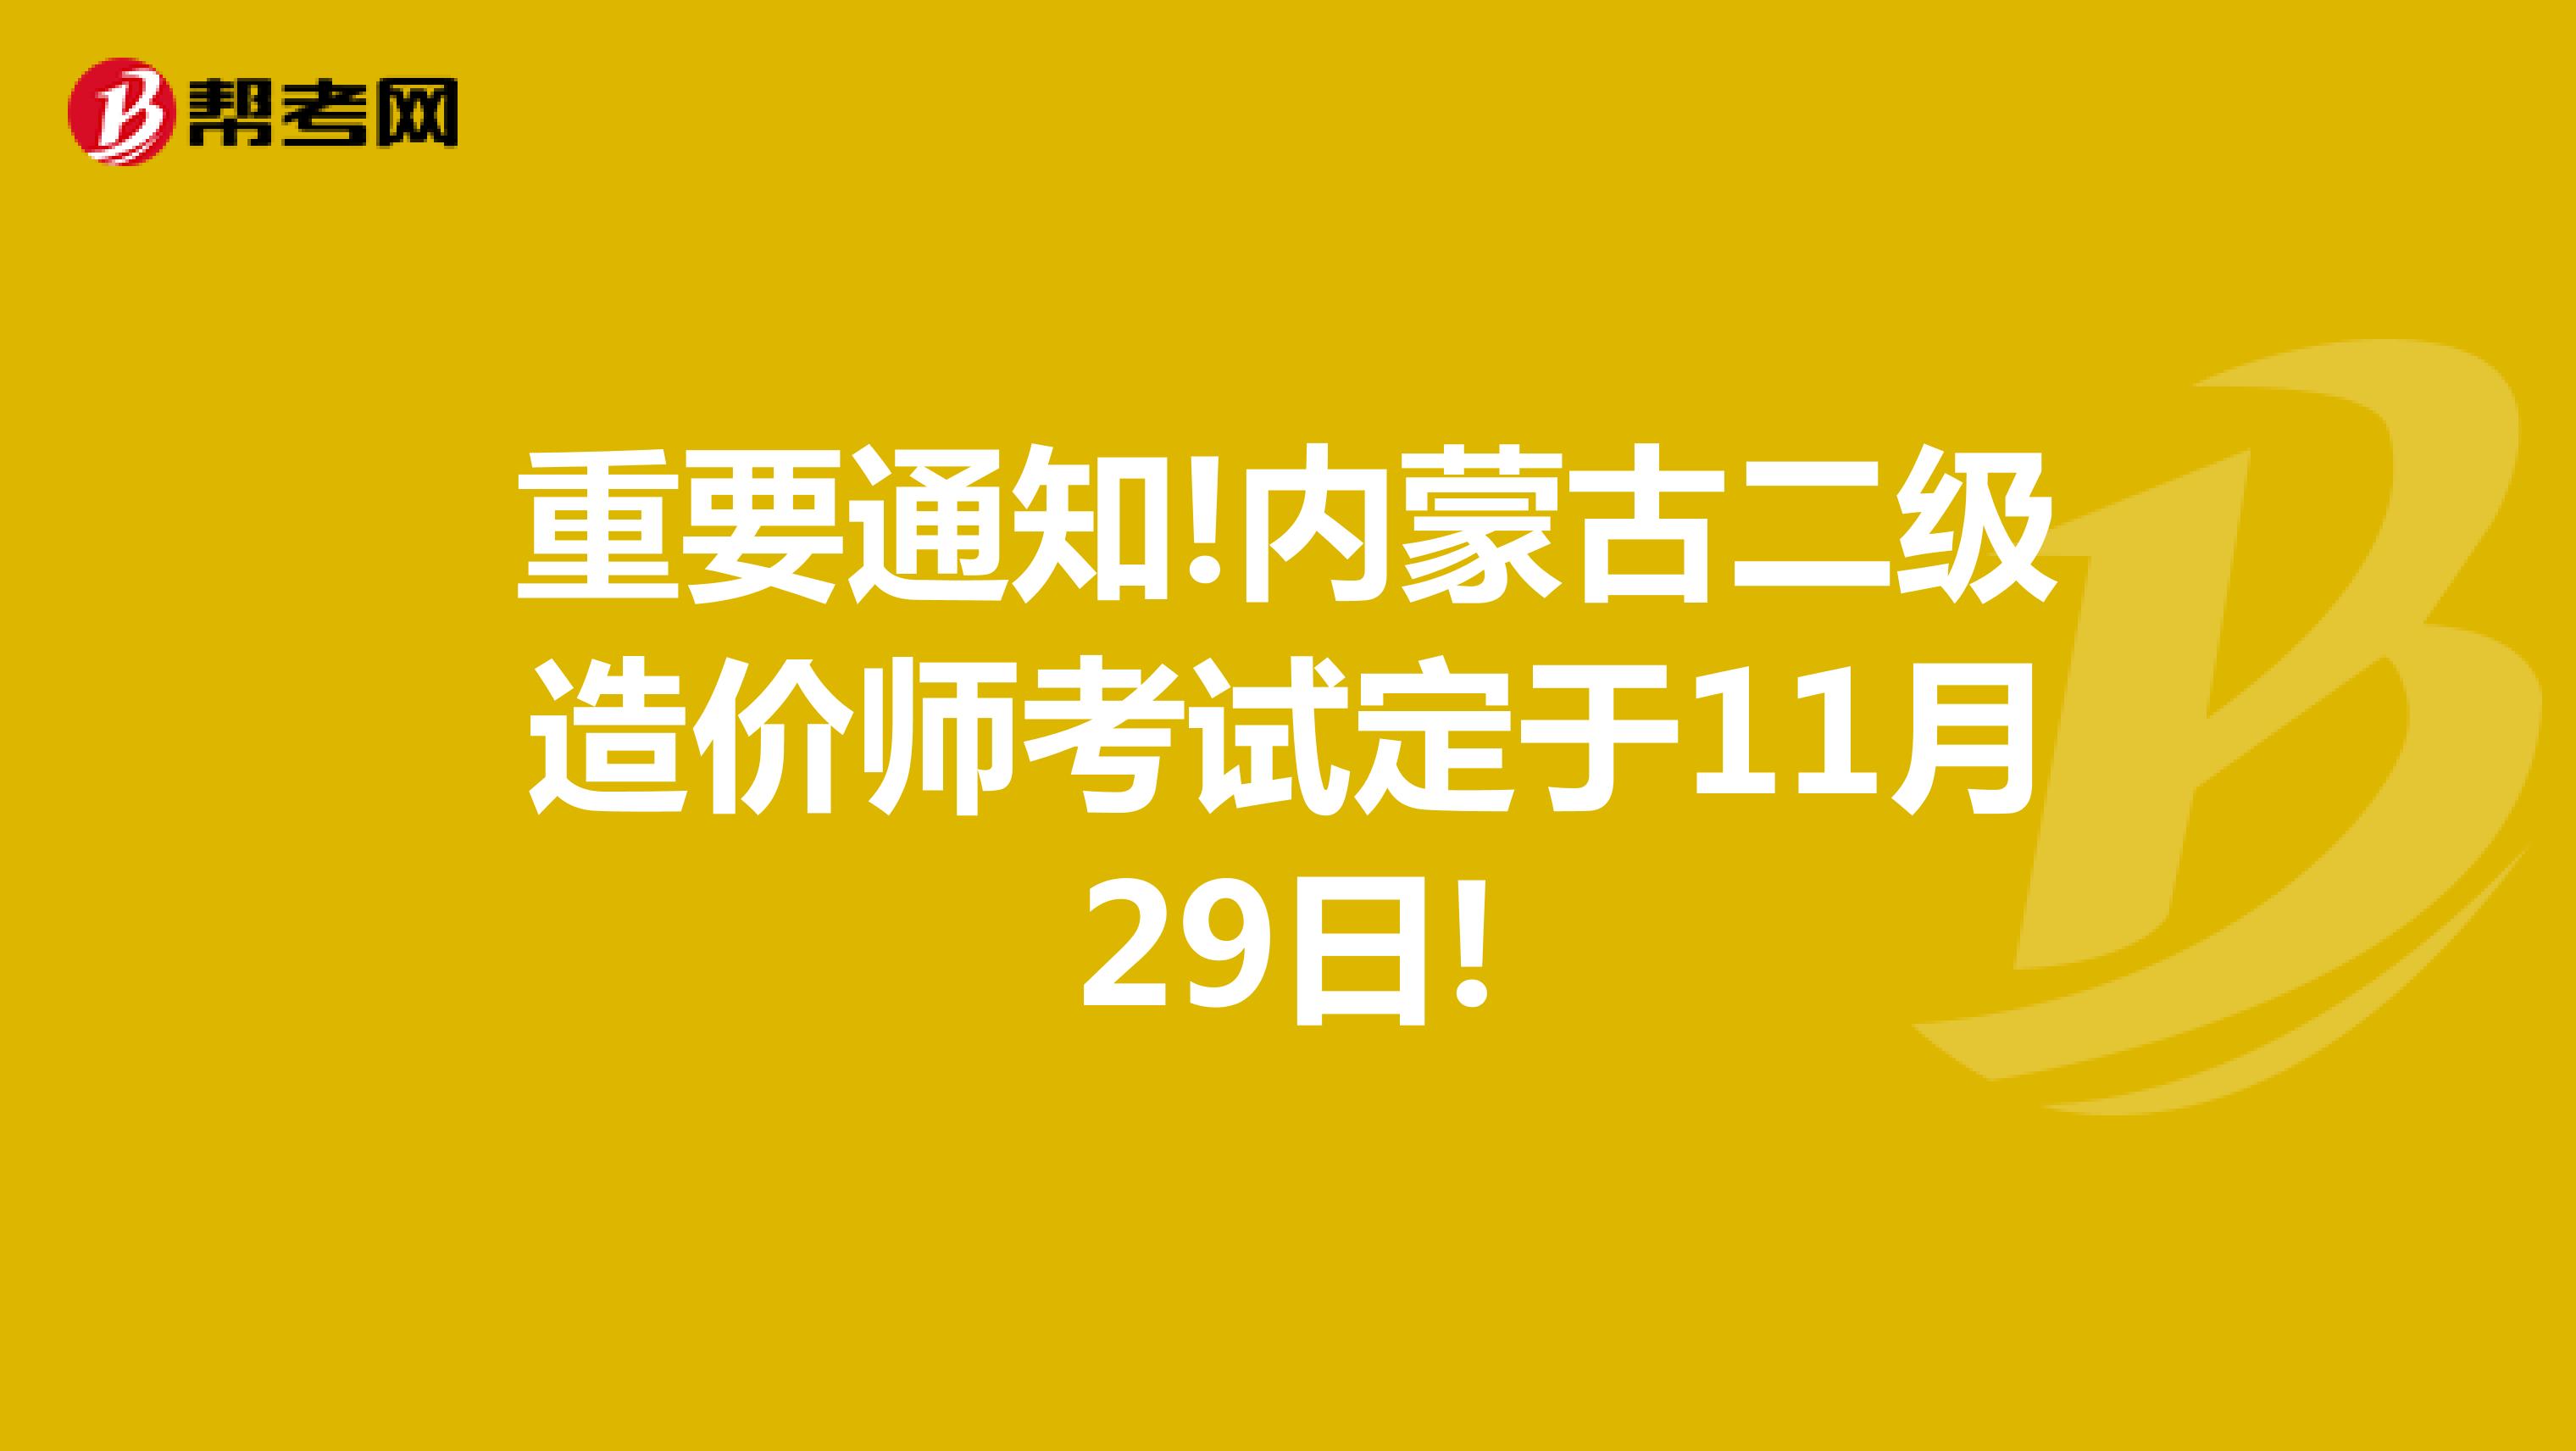 重要通知!内蒙古二级造价师考试定于11月29日!